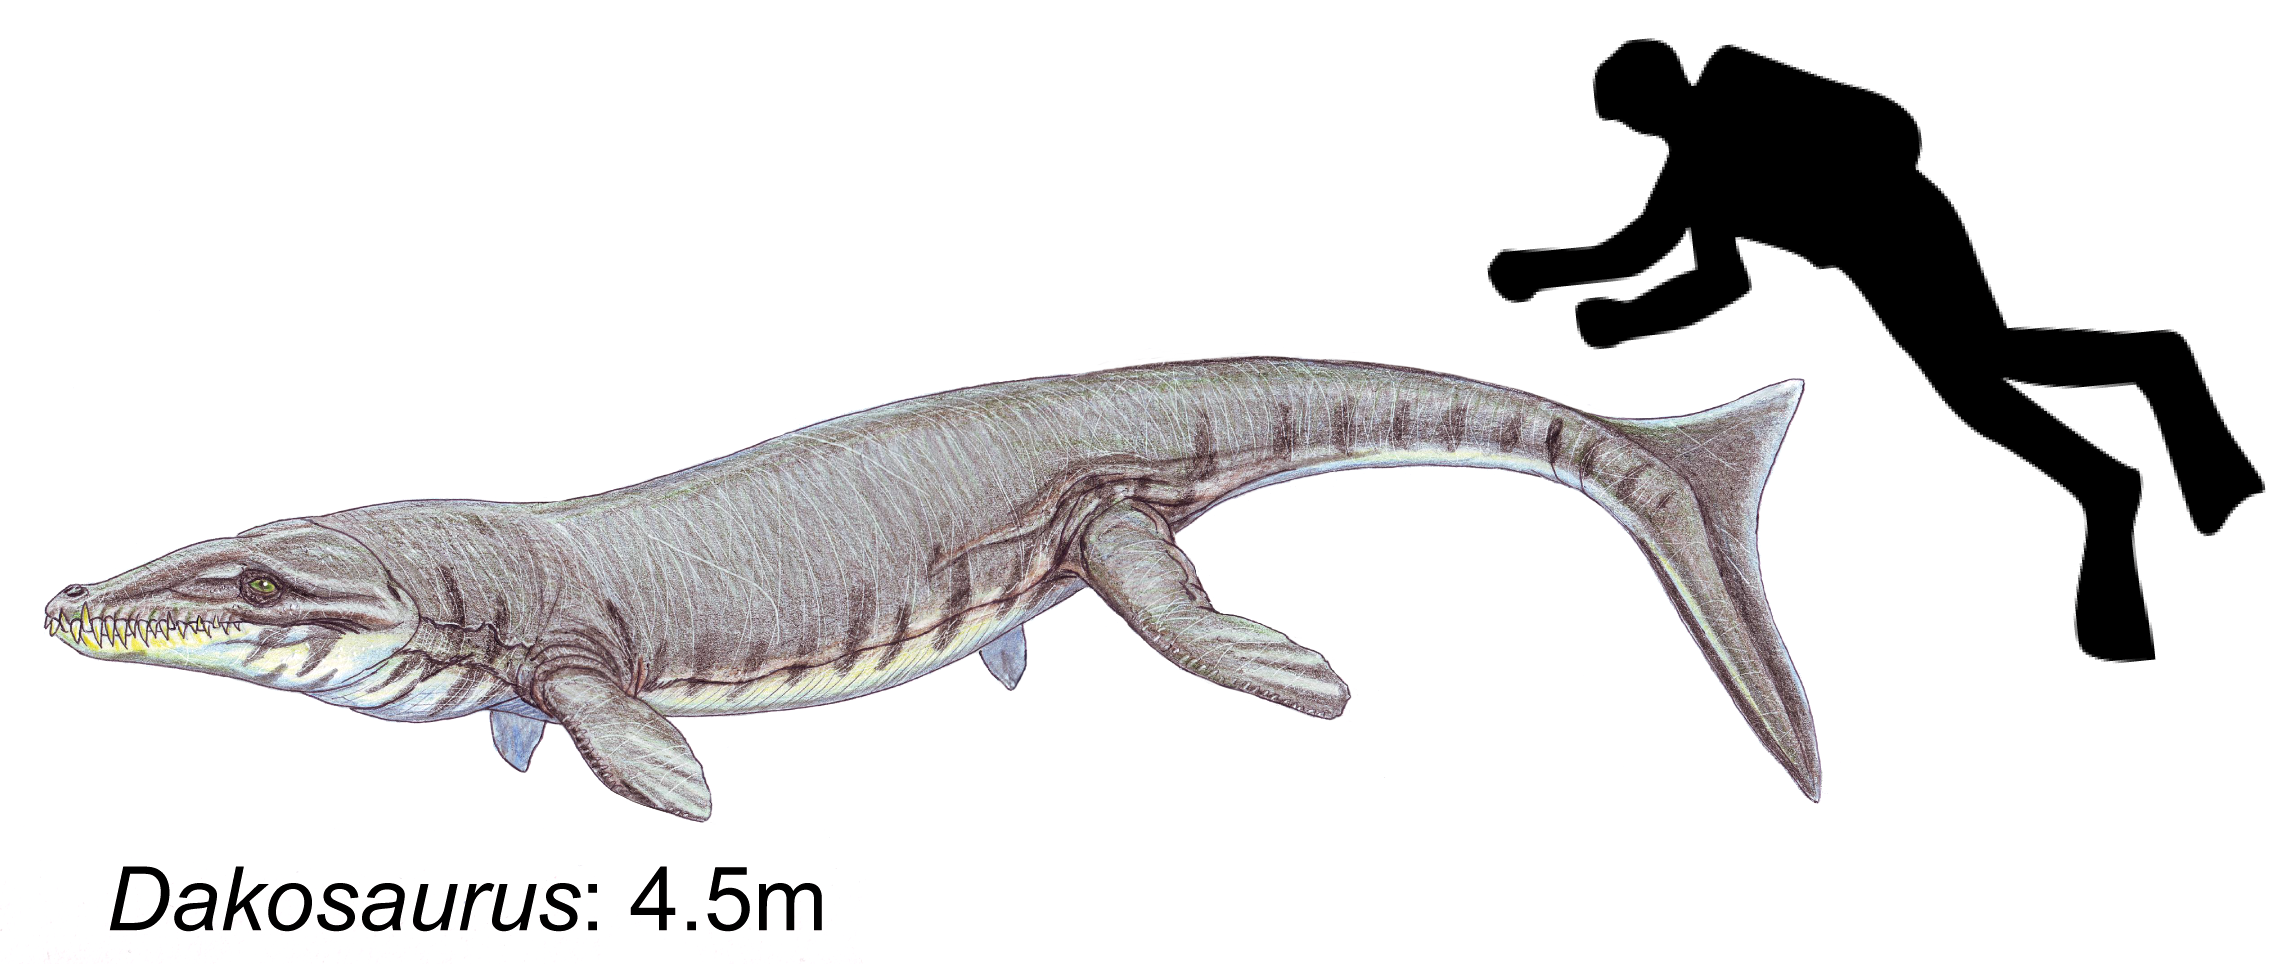 Dakosaurus reconstruction